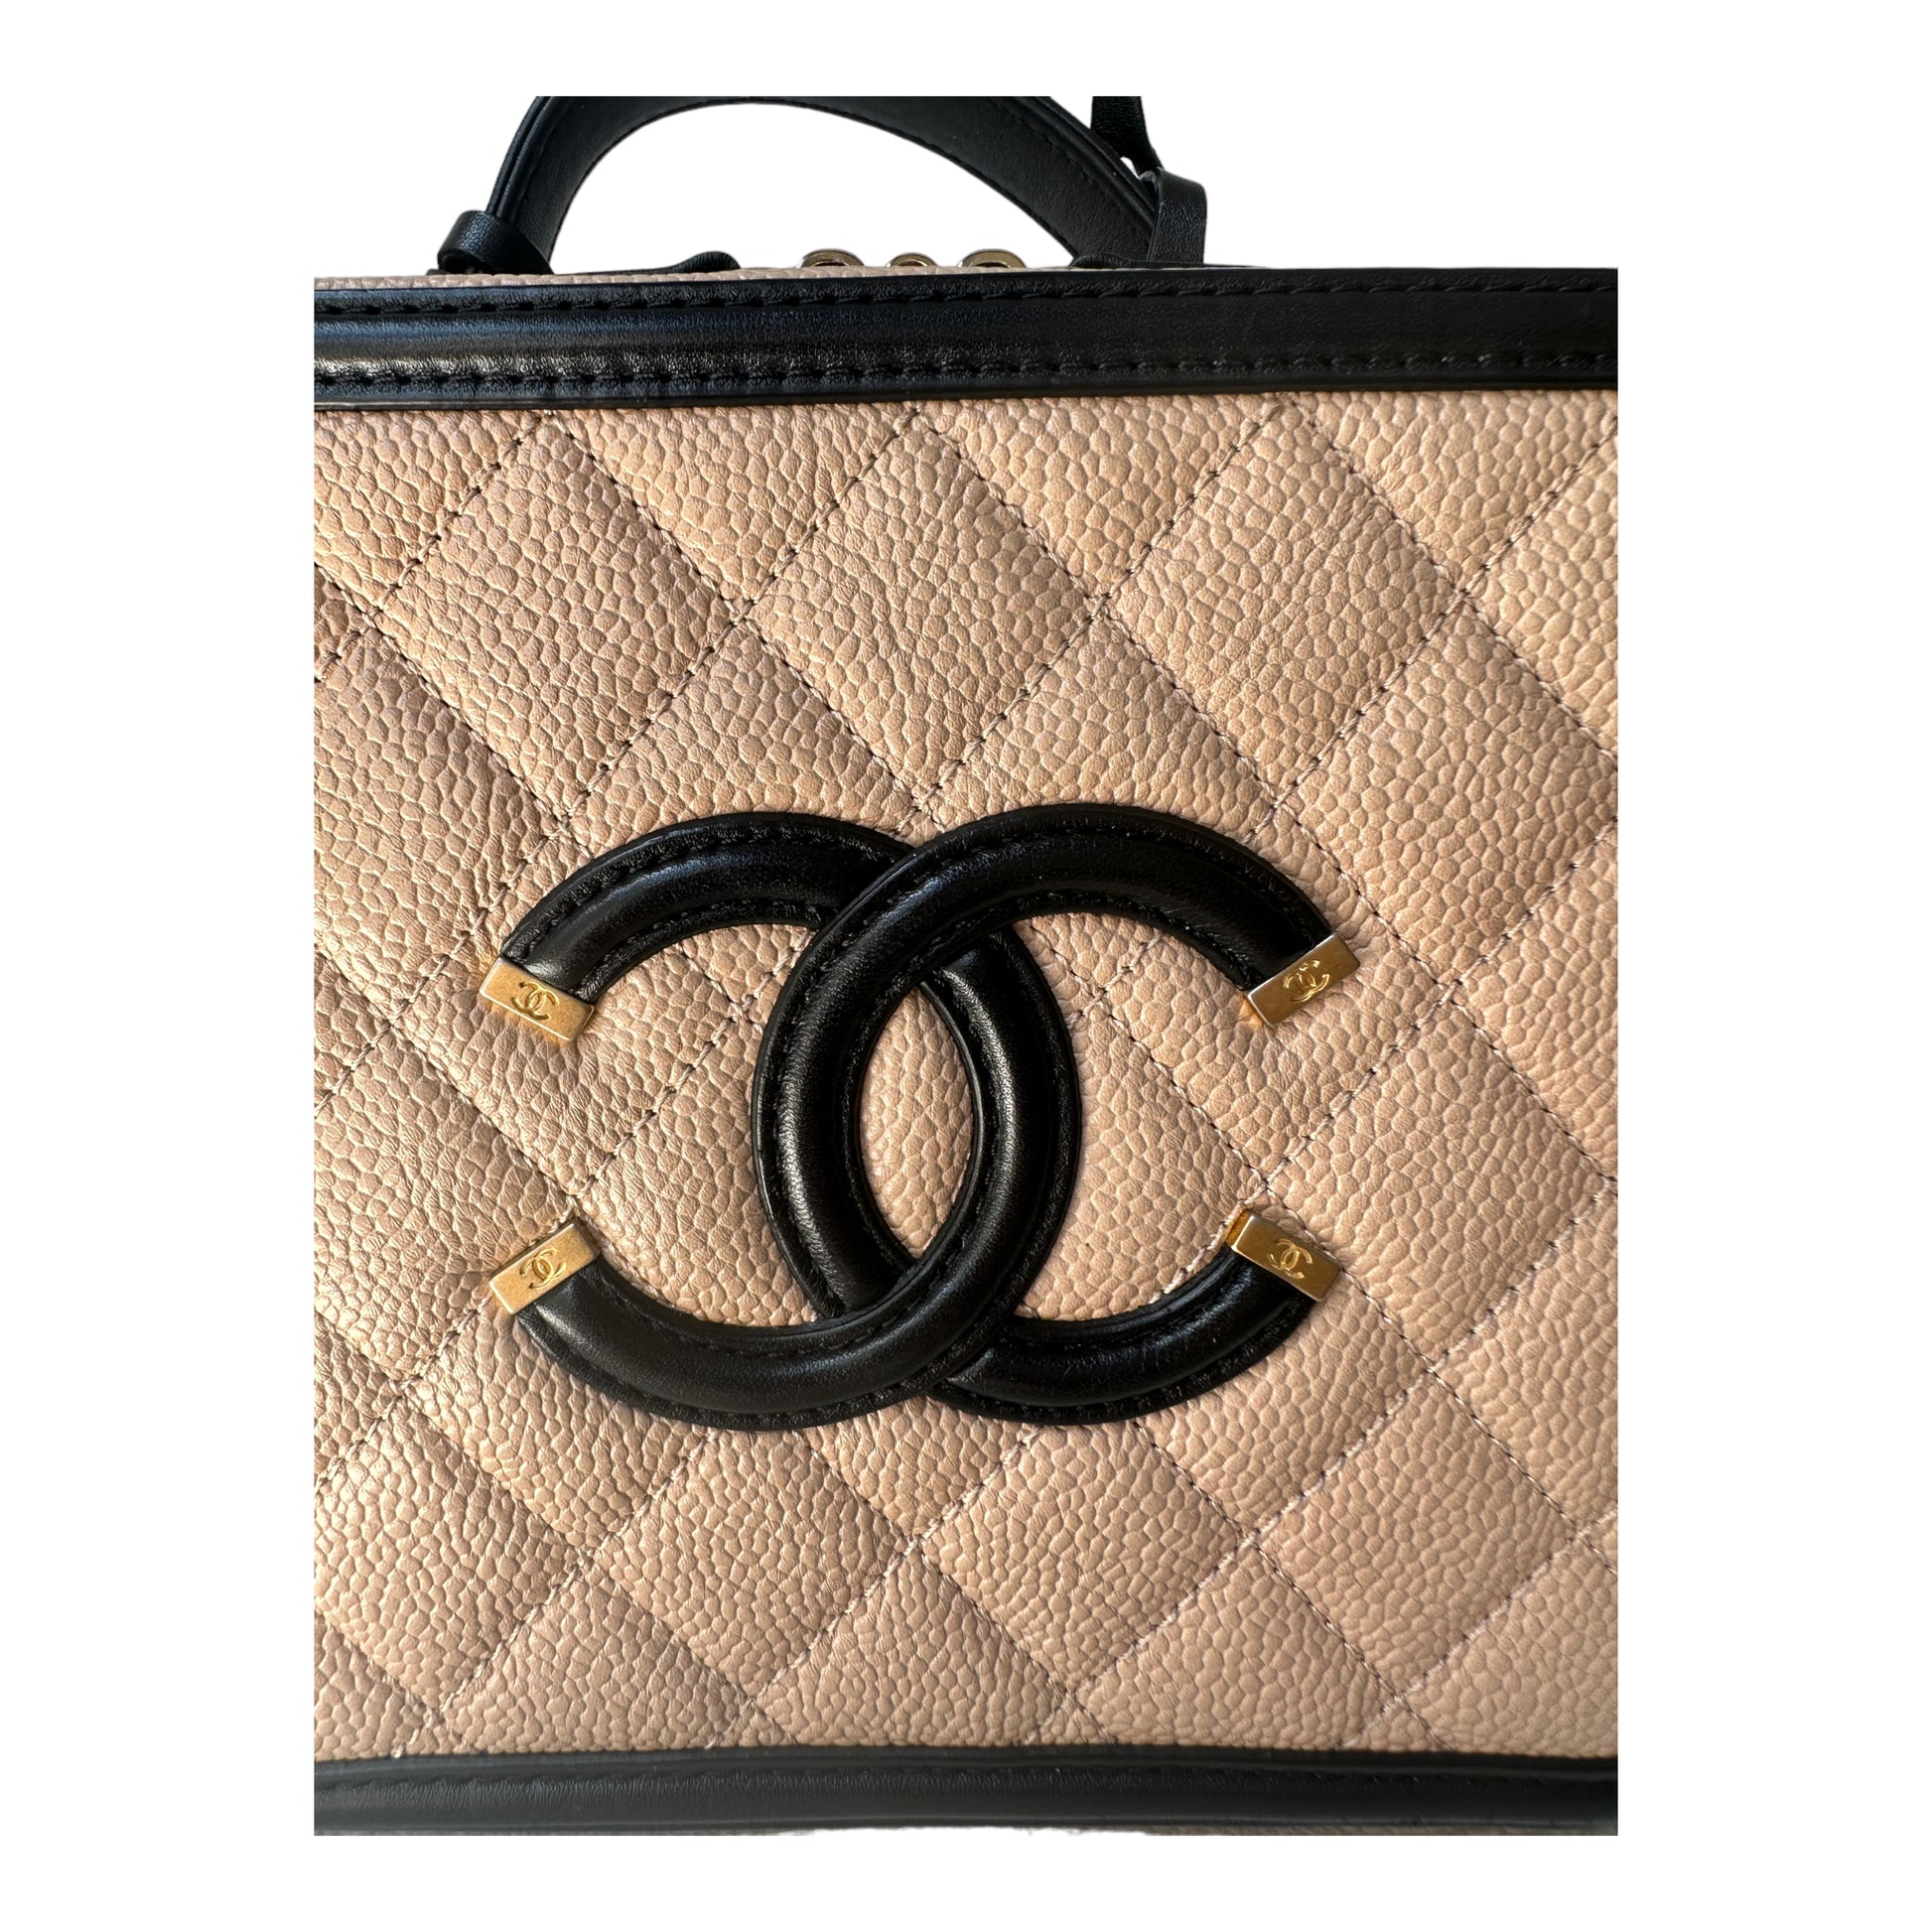 Chanel Filigree Vanity Case Beige Caviar - The Trove